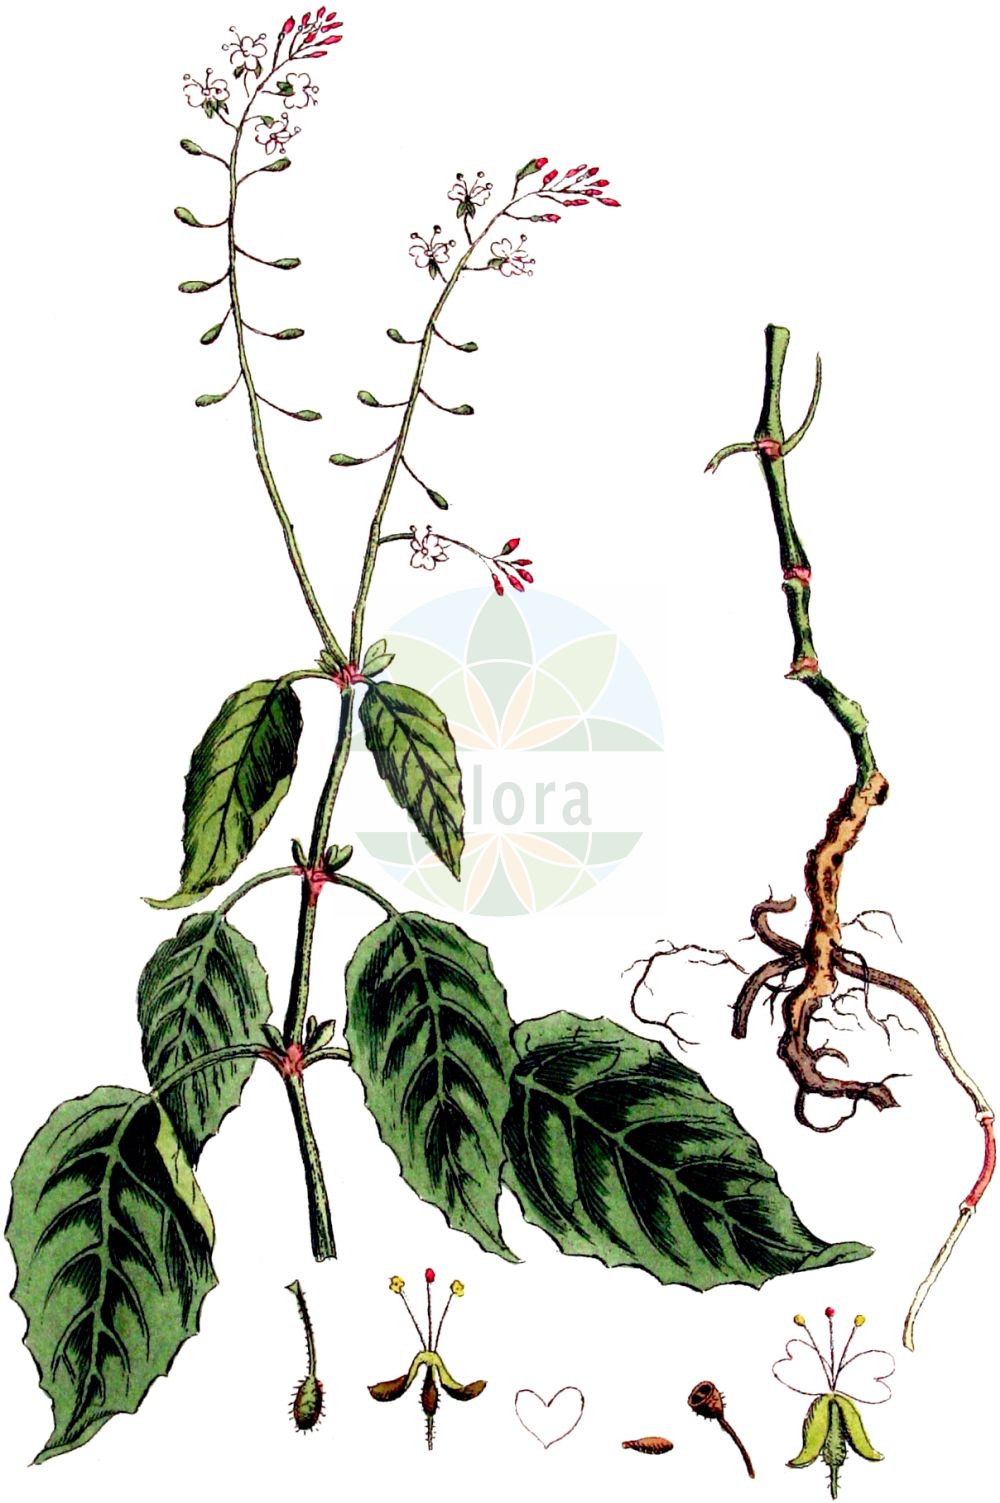 Historische Abbildung von Circaea lutetiana (Gewöhnliches Hexenkraut - Enchanter's-nightshade). Das Bild zeigt Blatt, Bluete, Frucht und Same. ---- Historical Drawing of Circaea lutetiana (Gewöhnliches Hexenkraut - Enchanter's-nightshade). The image is showing leaf, flower, fruit and seed.(Circaea lutetiana,Gewöhnliches Hexenkraut,Enchanter's-nightshade,Circaea lutetiana,Gewoehnliches Hexenkraut,Grosses Hexenkraut,Wald-Hexenkraut,Enchanter's-nightshade,Broadleaf Enchanter's Nightshade,Circaea,Hexenkraut,Enchanter's Nightshade,Onagraceae,Nachtkerzengewächse,Evening Primrose family,Blatt,Bluete,Frucht,Same,leaf,flower,fruit,seed,Kops (1800-1934))